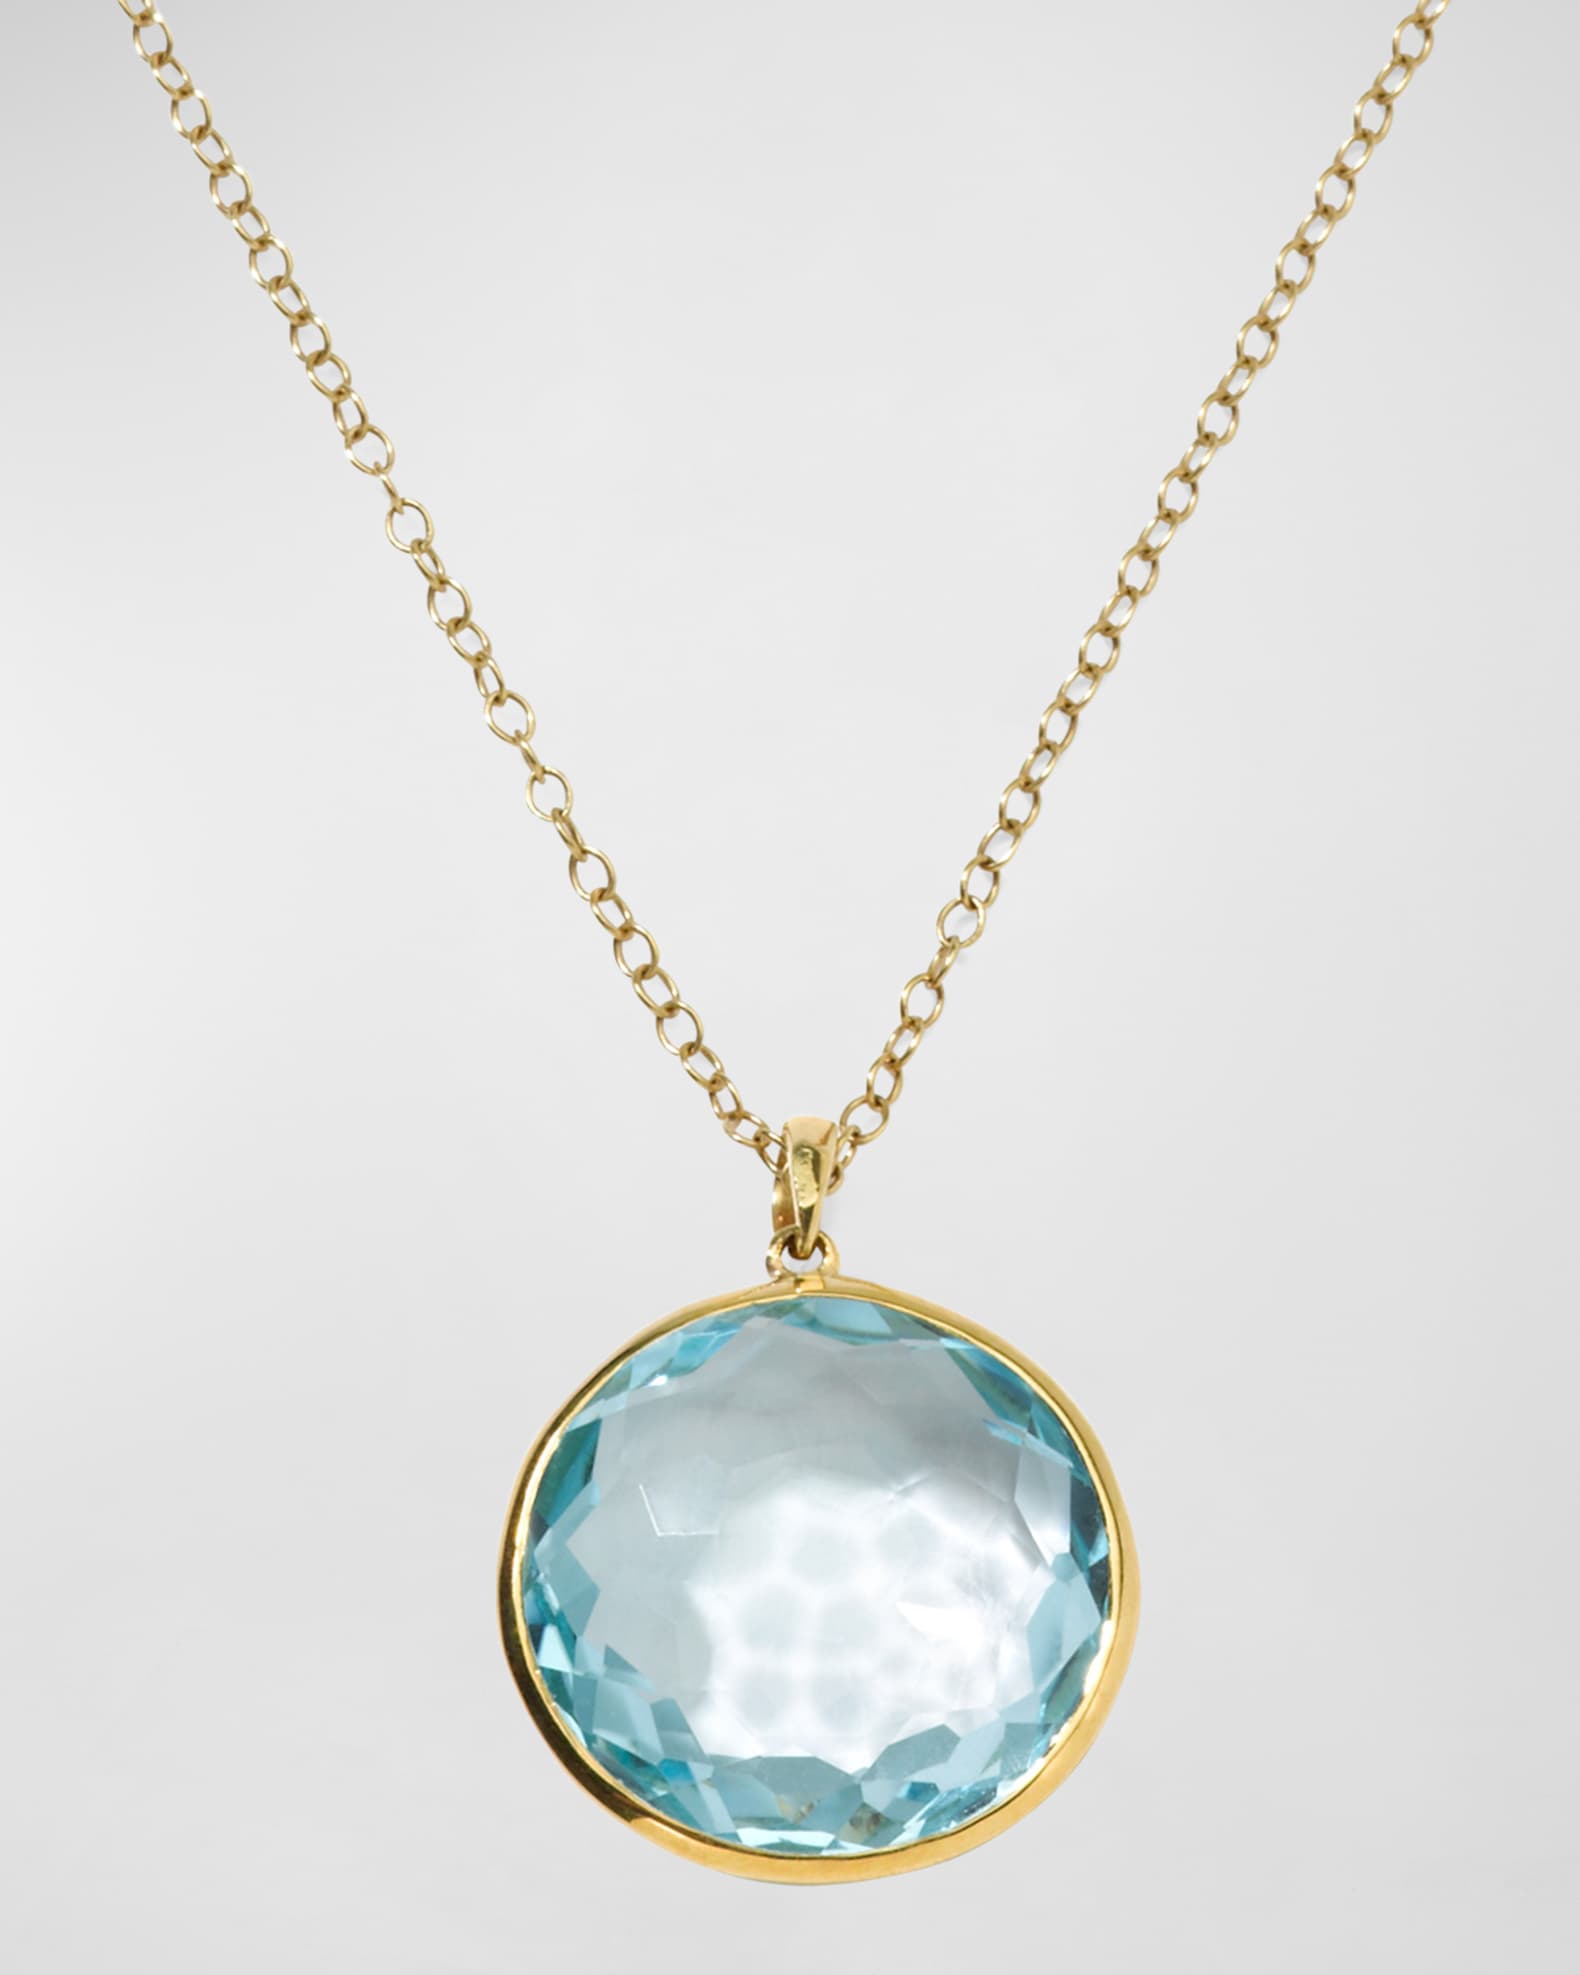 Ippolita Medium Pendant Necklace in 18K Gold | Neiman Marcus